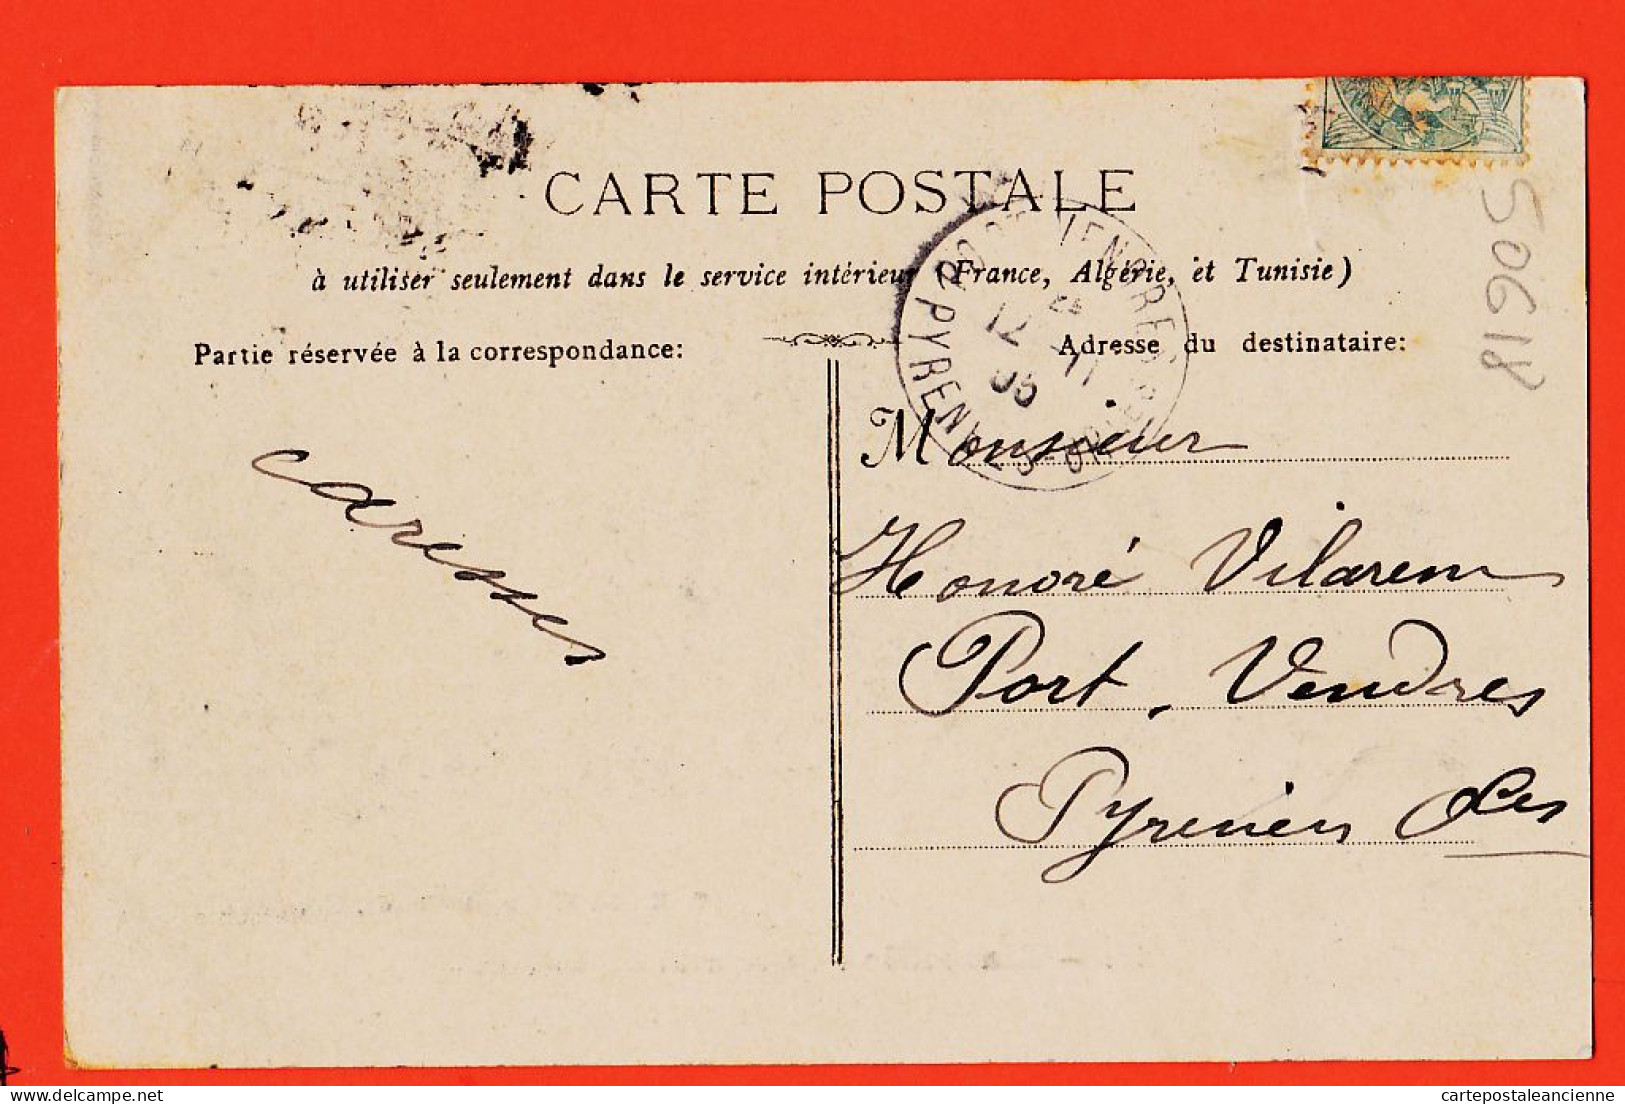 10703  / ⭐ ◉  13-MARSEILLE Un Coin Du Vieux Port 1905 à Honoré VILAREM  Port-Vendres -G.M 43 Vieux Chemin De Rome N°10 - Canebière, Centre Ville